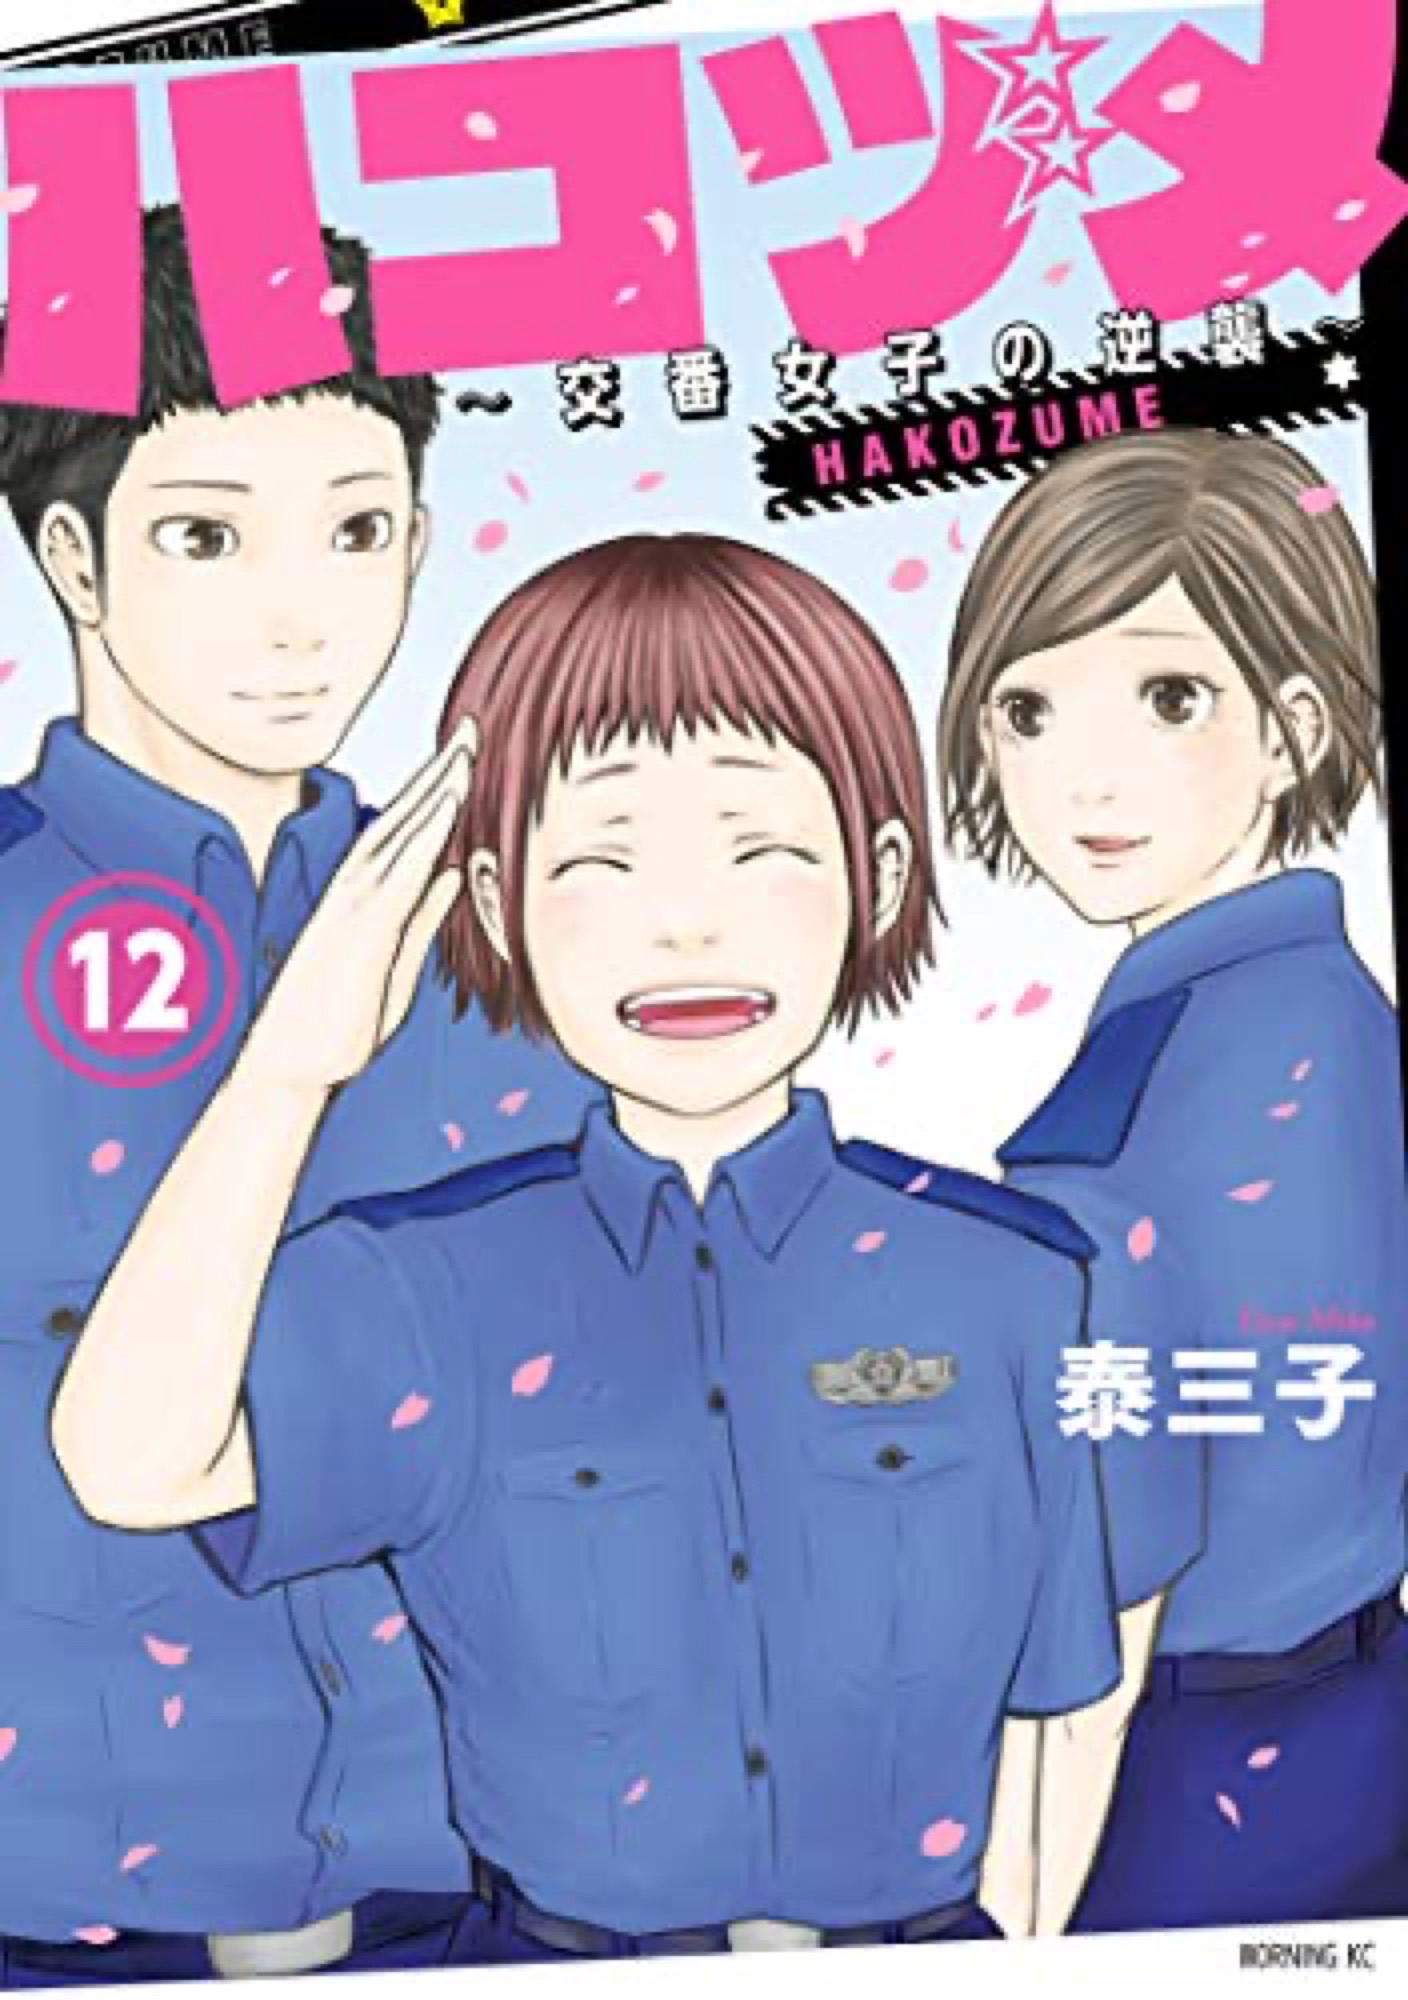 泰三子「ハコヅメ～交番女子の逆襲～」第12巻 4月23日発売!